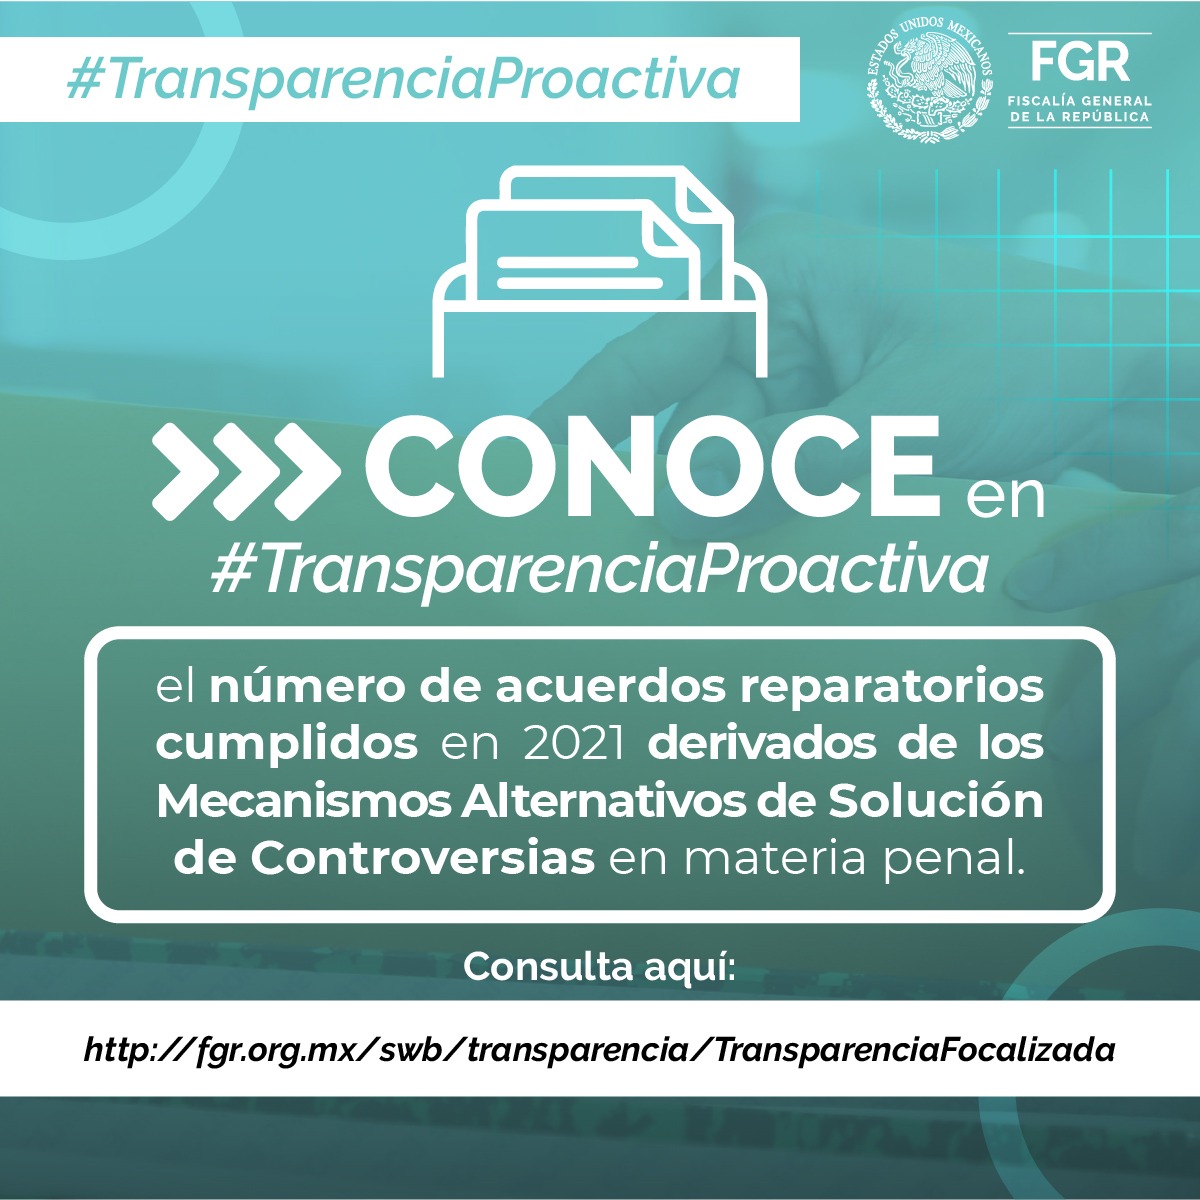 Consulta #TransparenciaProactiva de la #FGR, información accesible y de interés público. fgr.org.mx/swb/transparen…